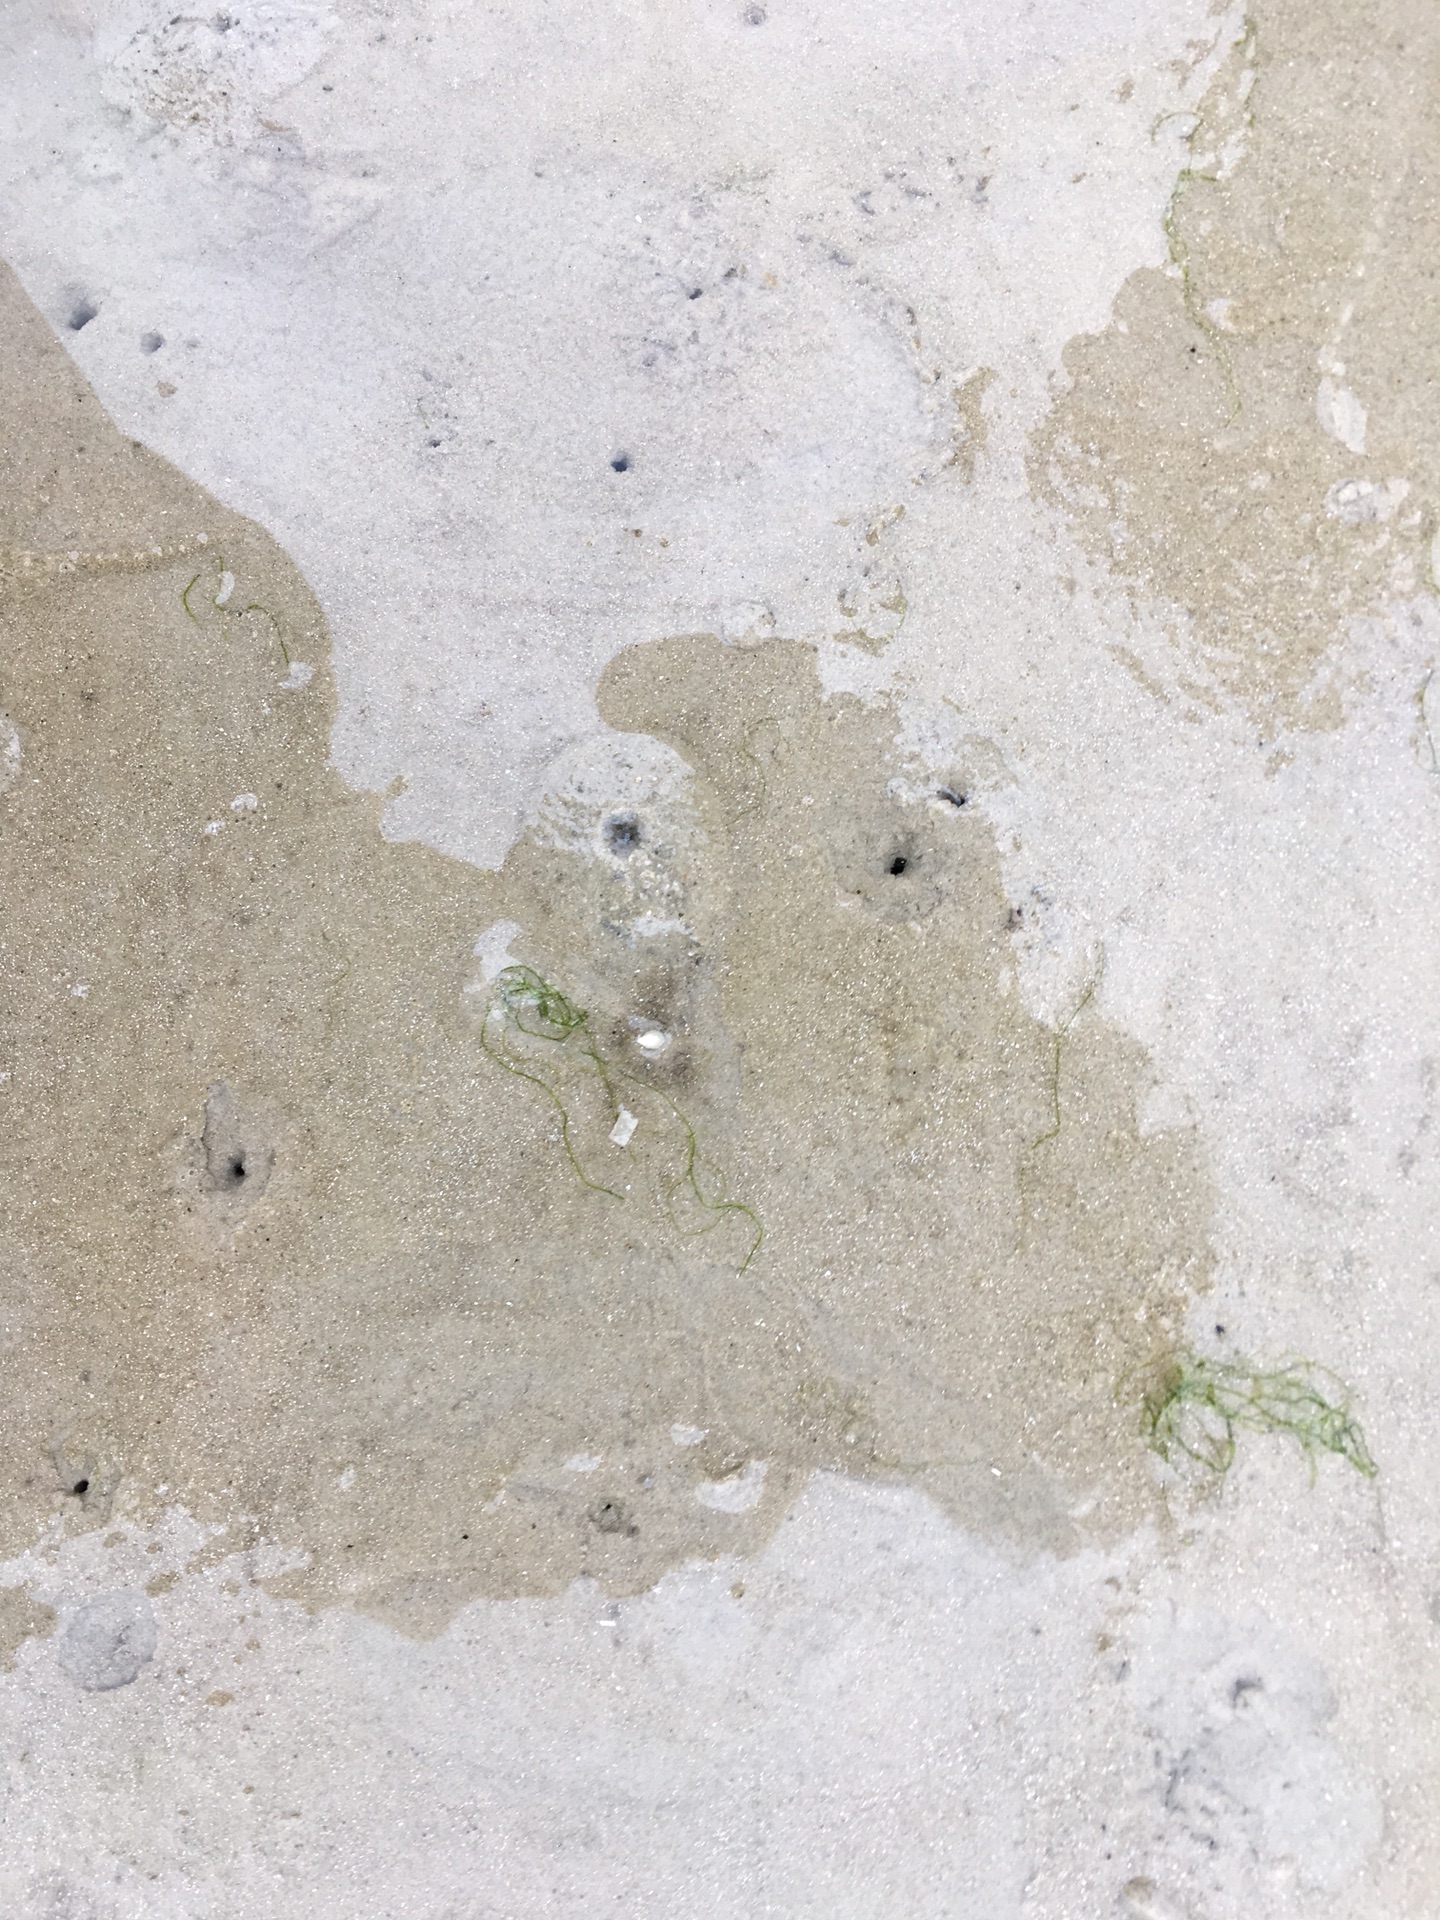 银滩上随处可见这些小沙球,都是小沙蟹弄的,而银滩上的小孔多是沙虫